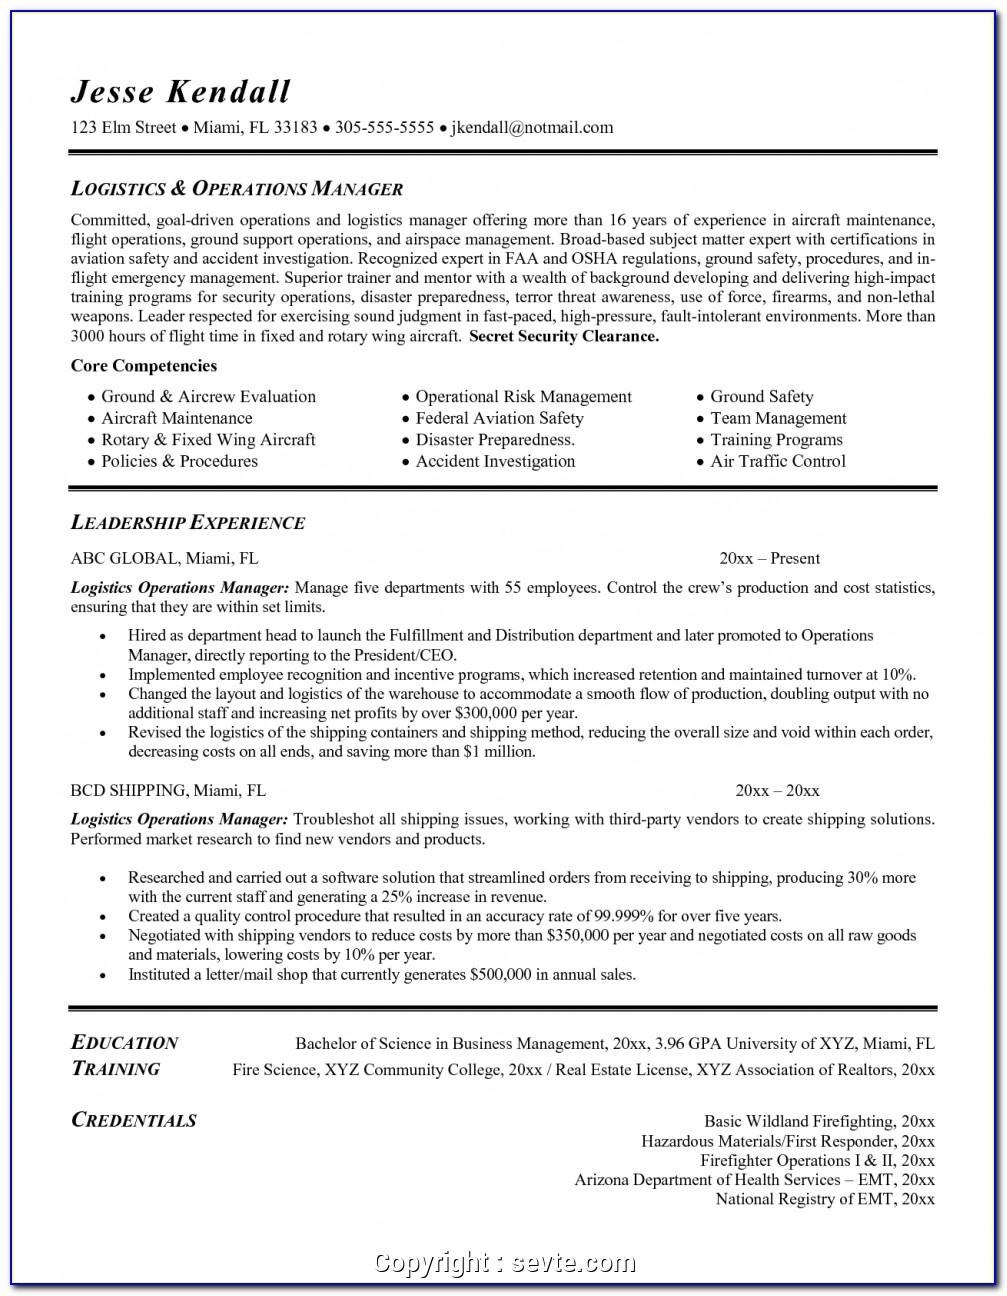 Logistic Job Description Resume